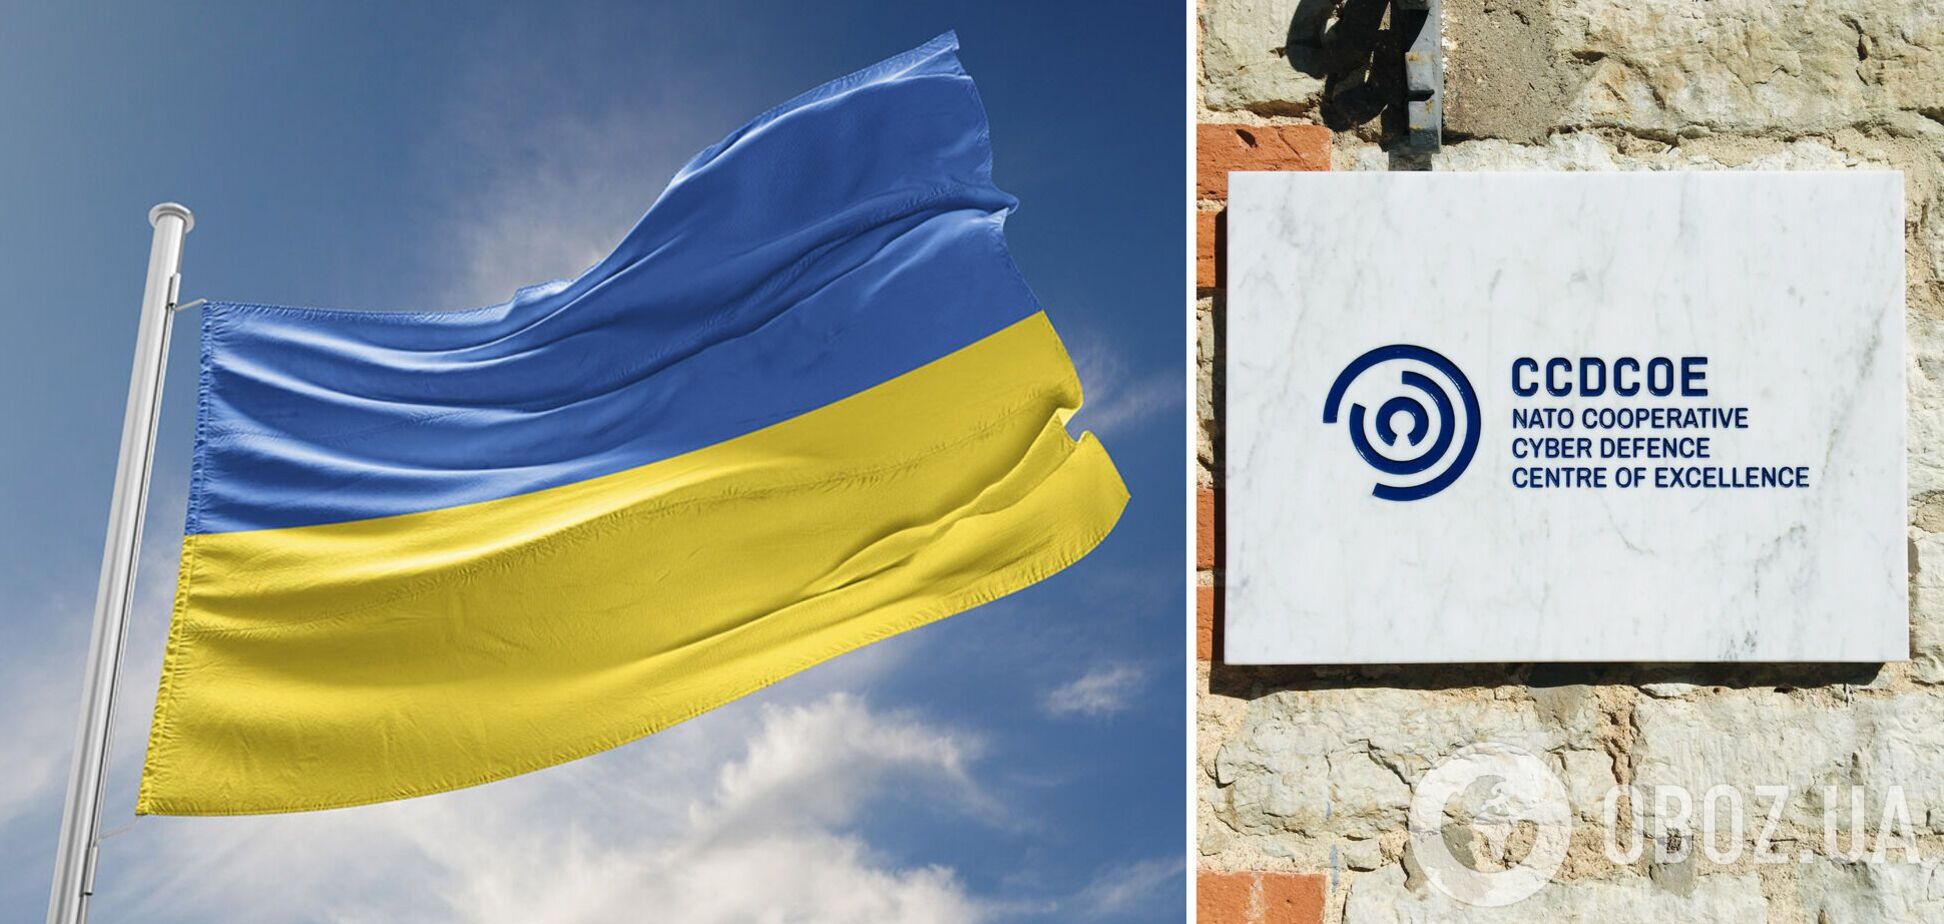 Україна стане учасником центру передових технологій з кібероборони НАТО